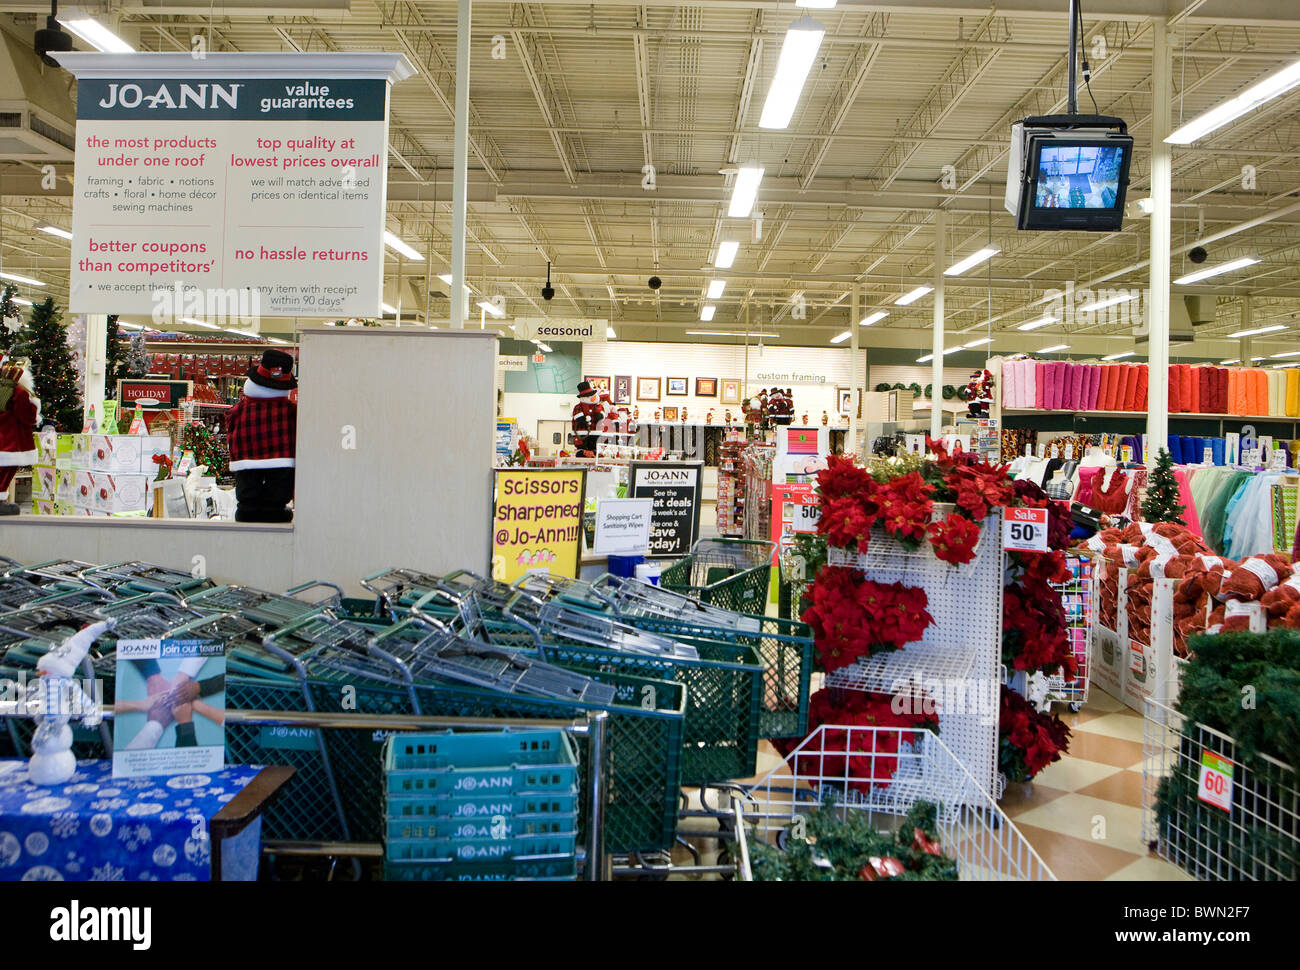 A Jo-Ann retail store. Stock Photo